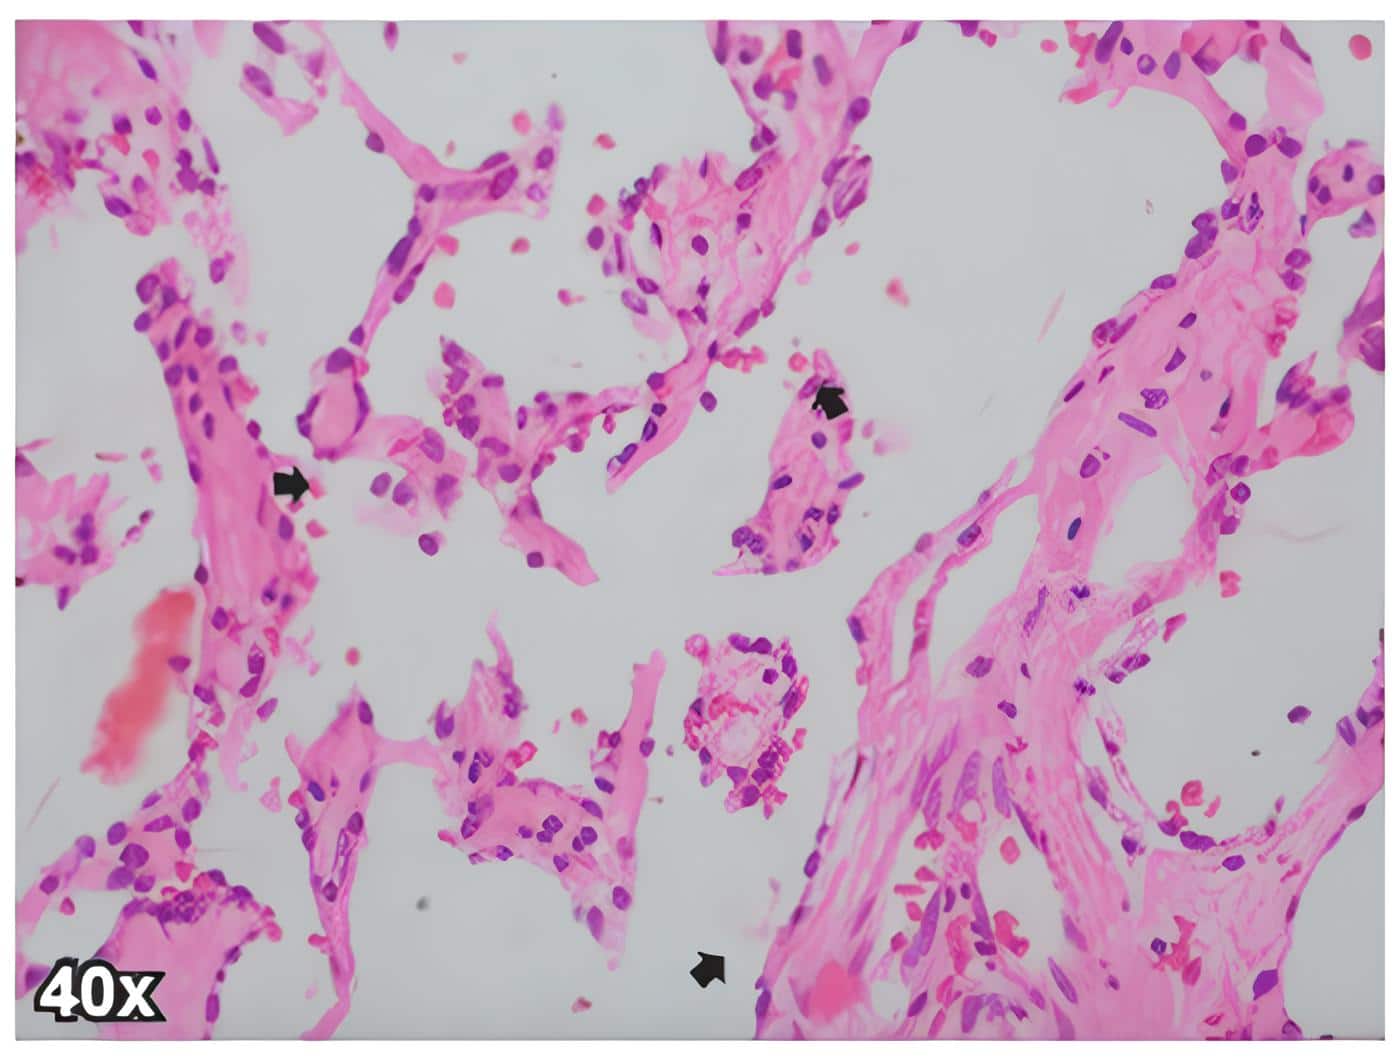 Angiosarcoma de mama de la
paciente, donde se observan celulas endoteliales